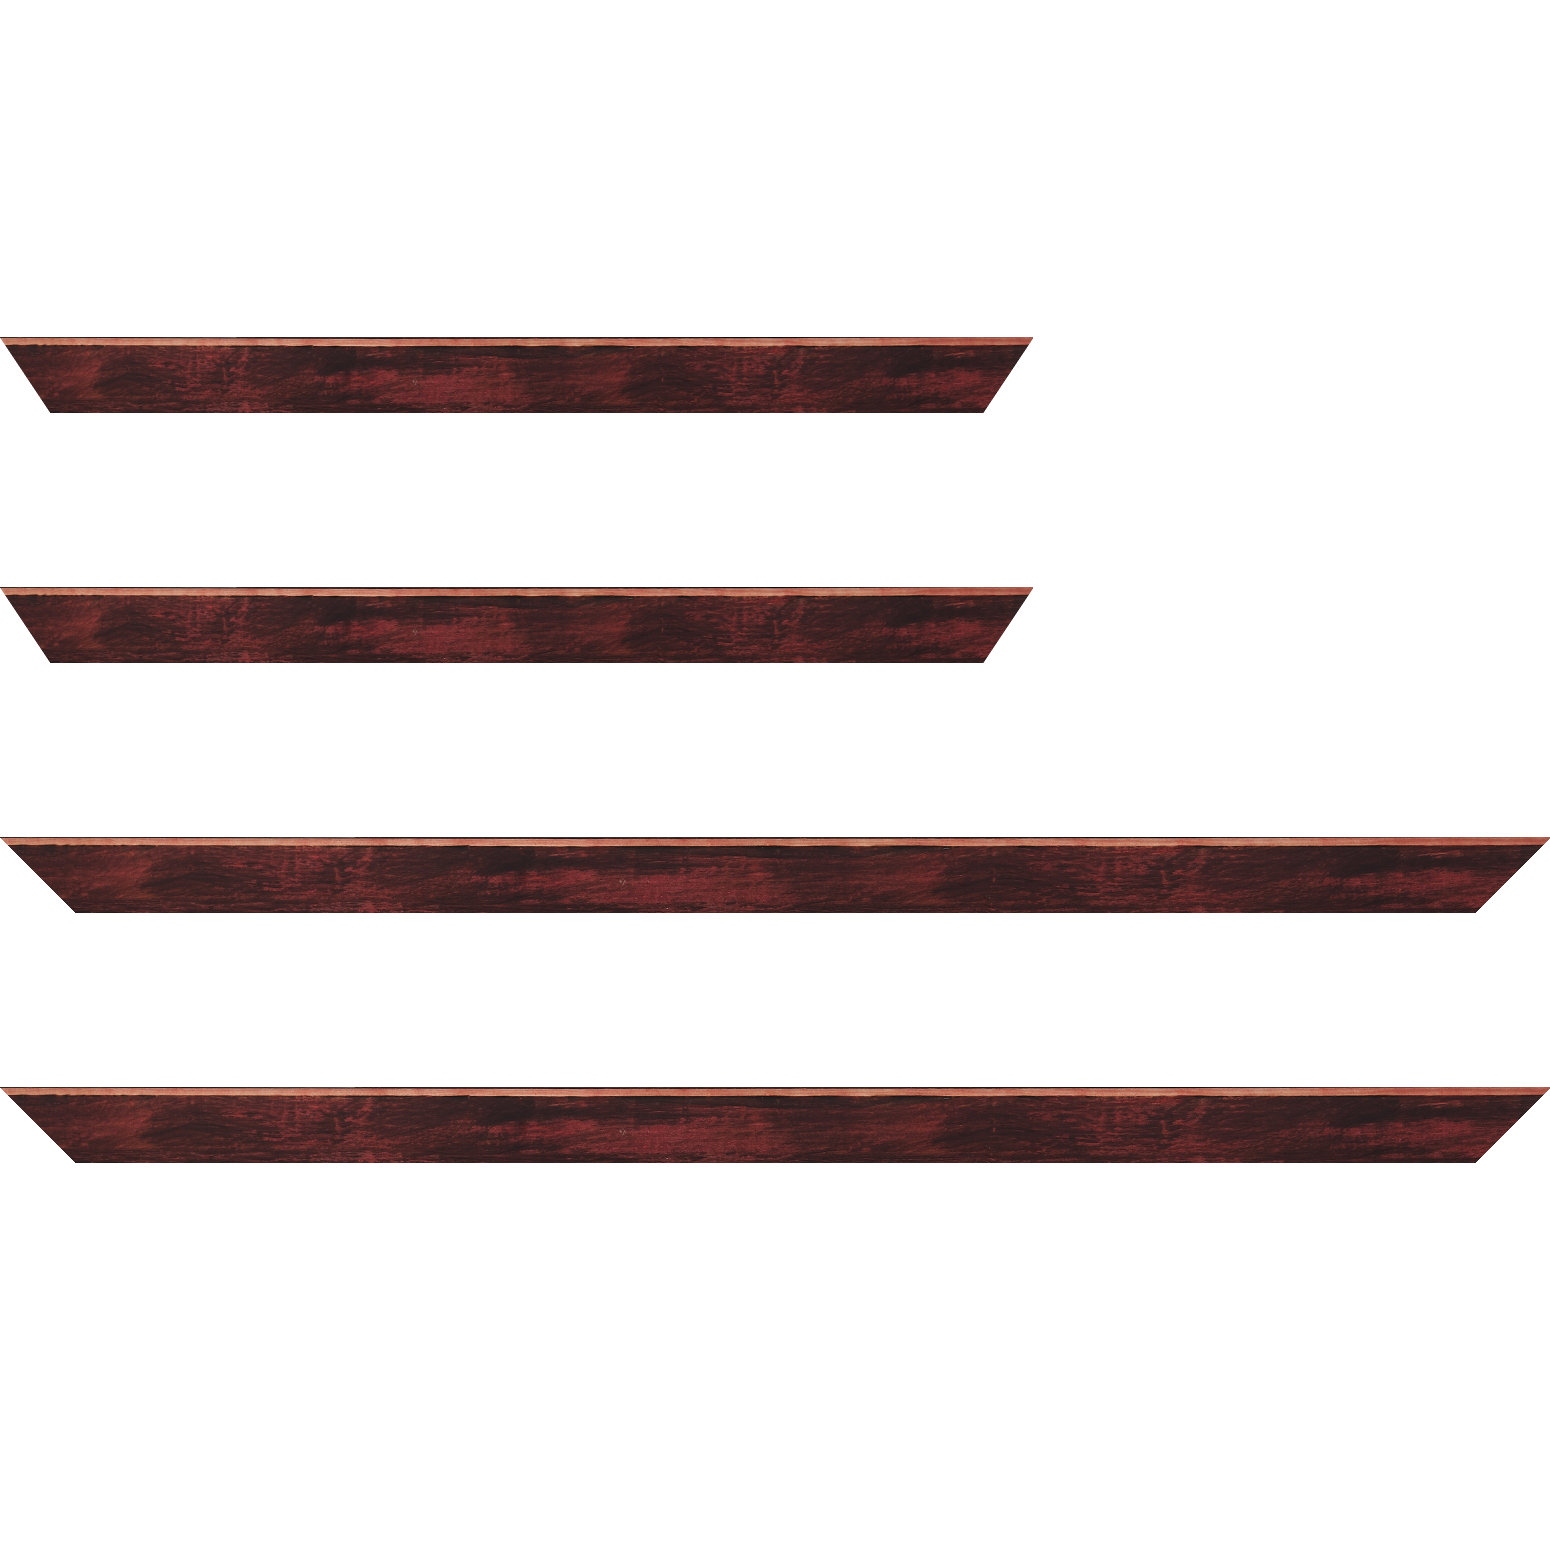 Baguette bois profil arrondi en pente plongeant largeur 2.4cm couleur bordeaux effet ressuyé, angle du cadre extérieur filet naturel - 35x24